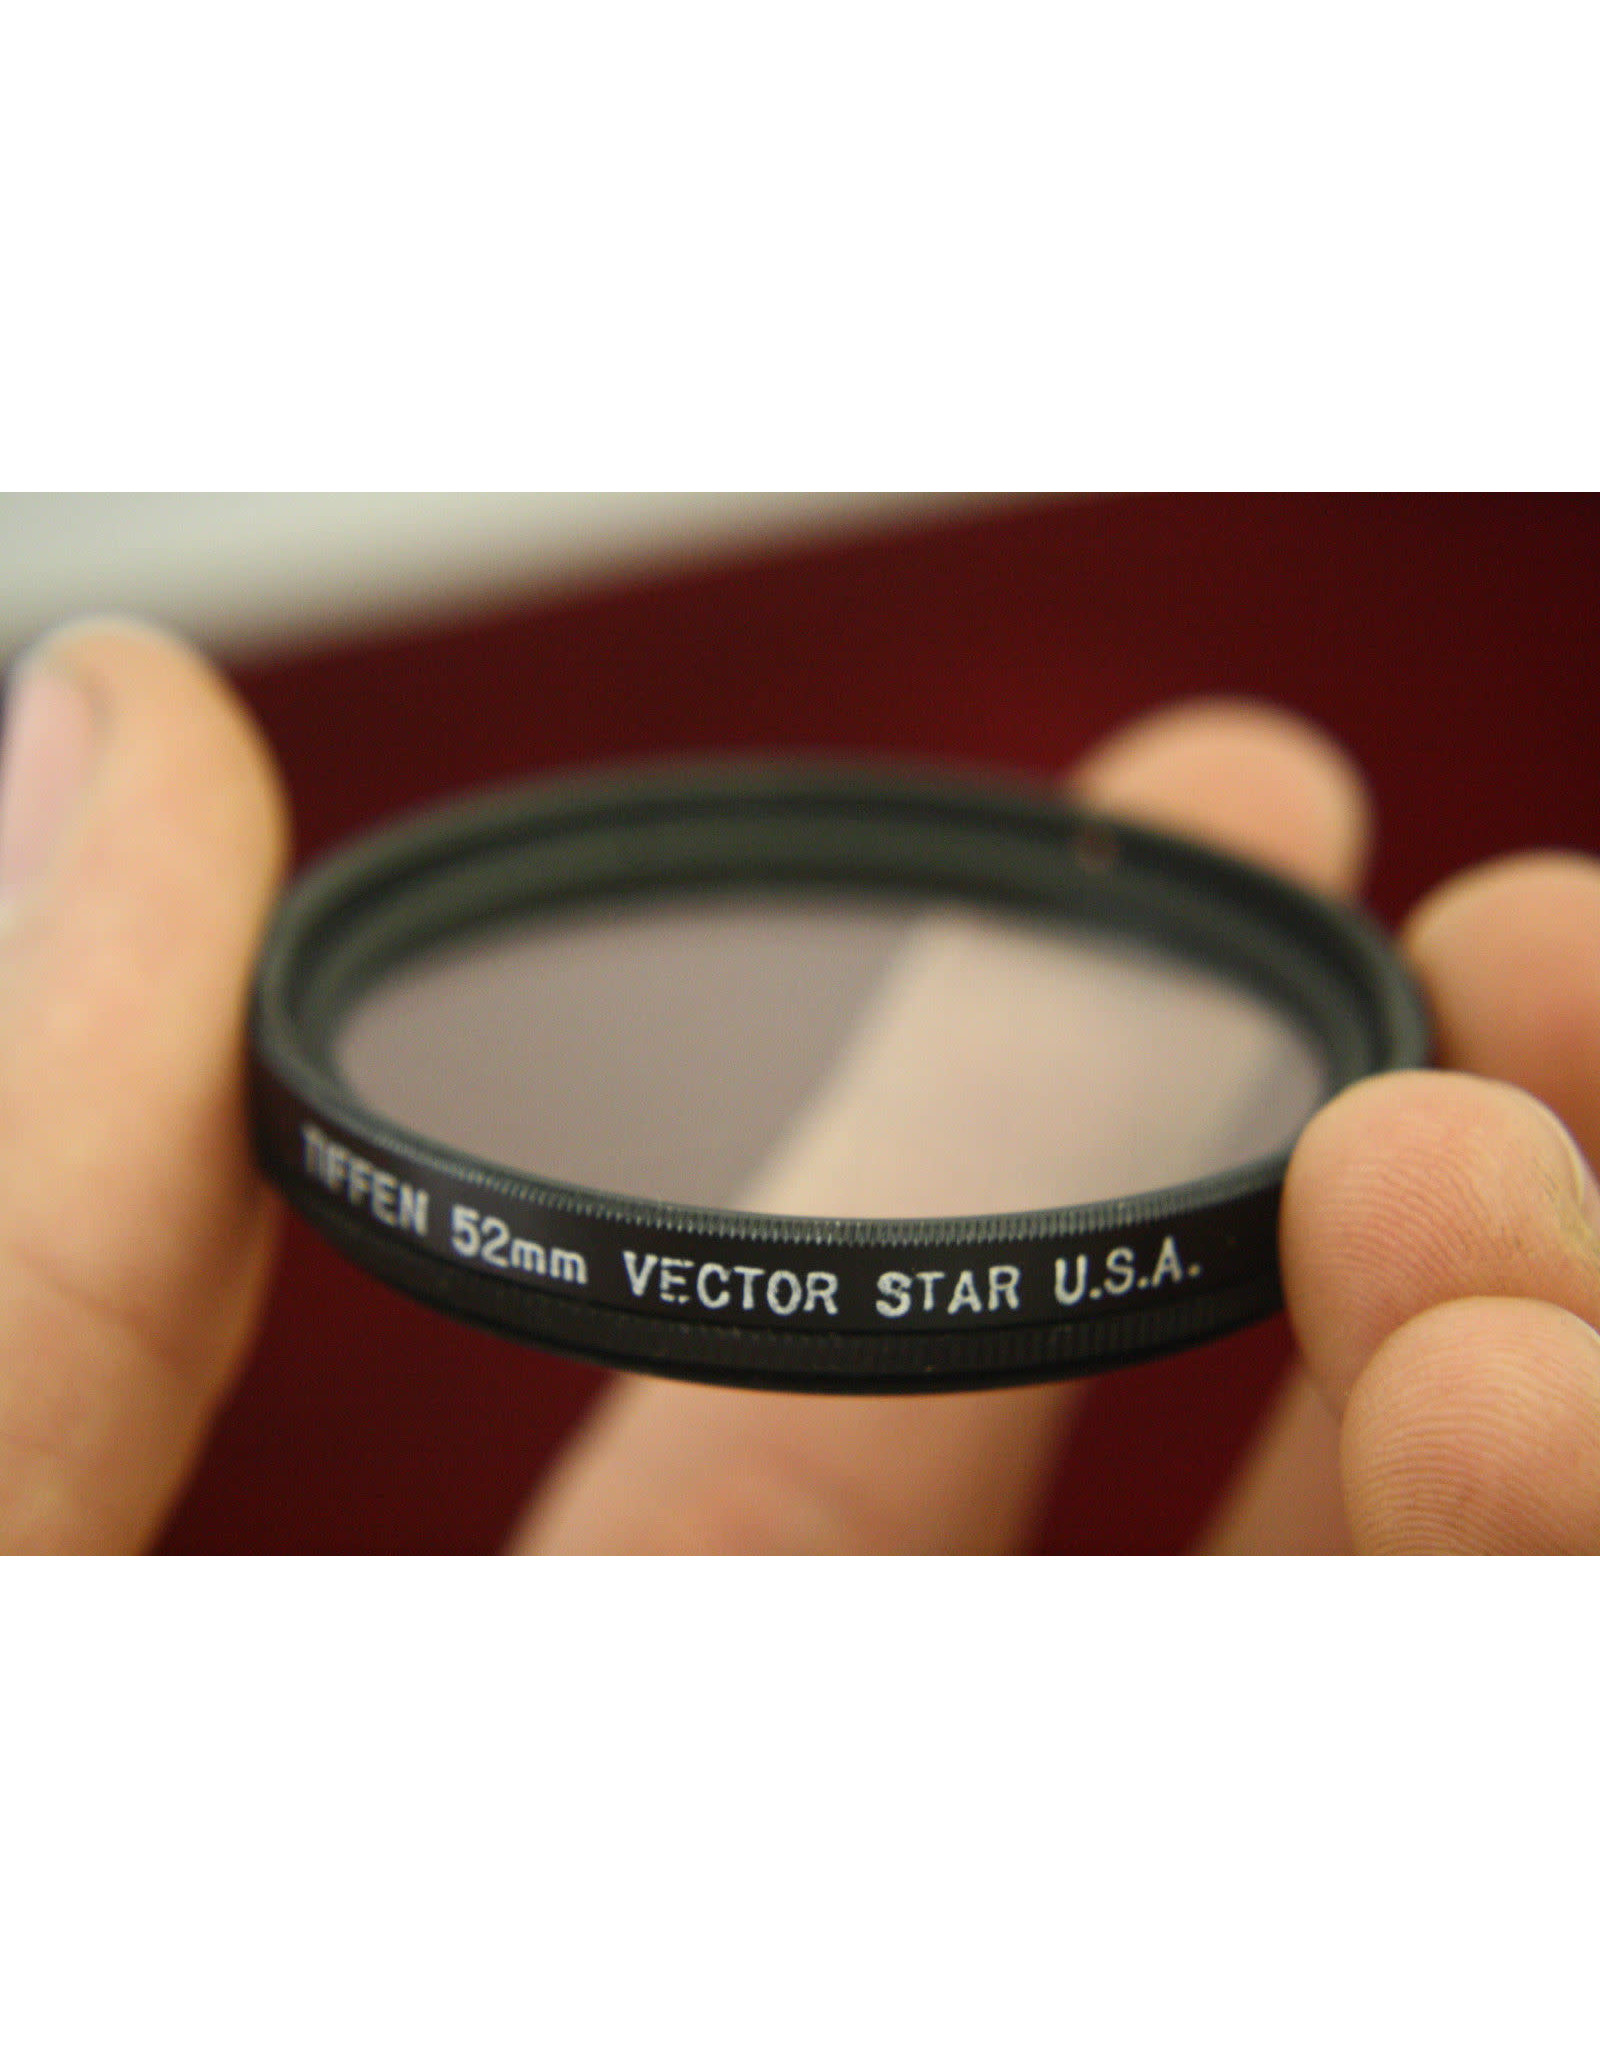 Tiffen 52mm Vector Star Filter